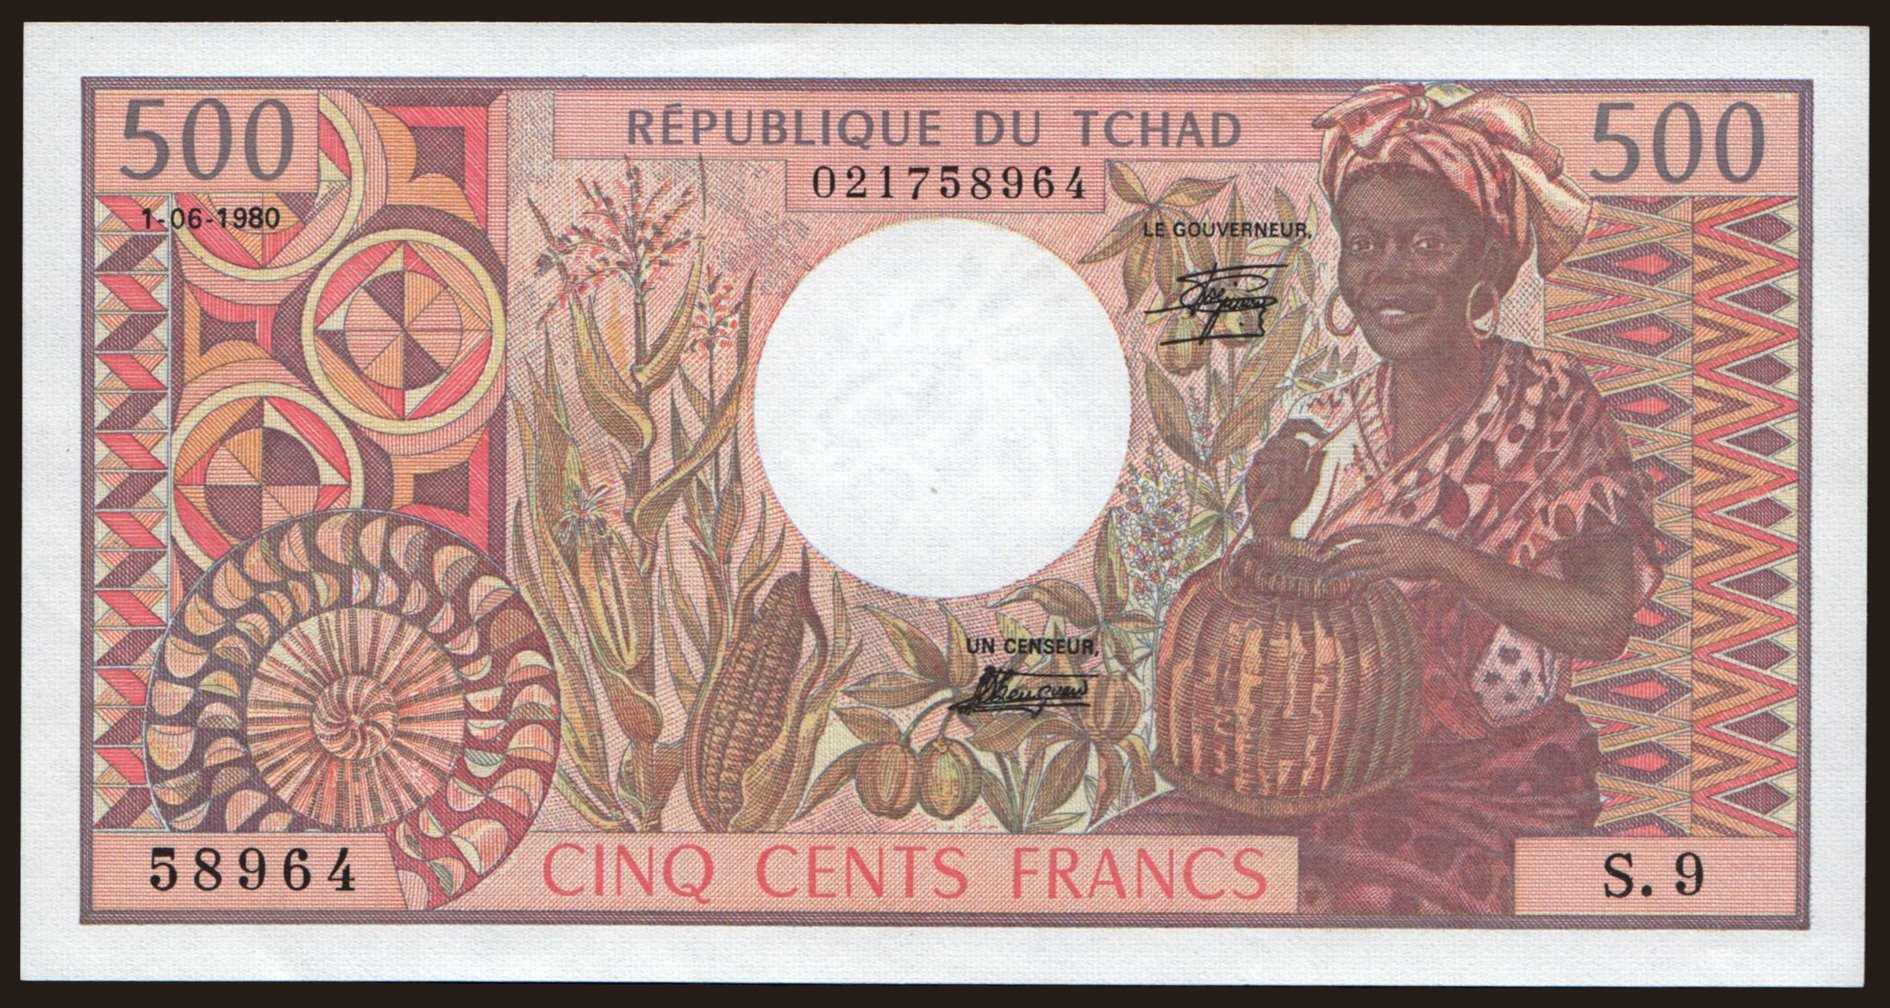 500 francs, 1980